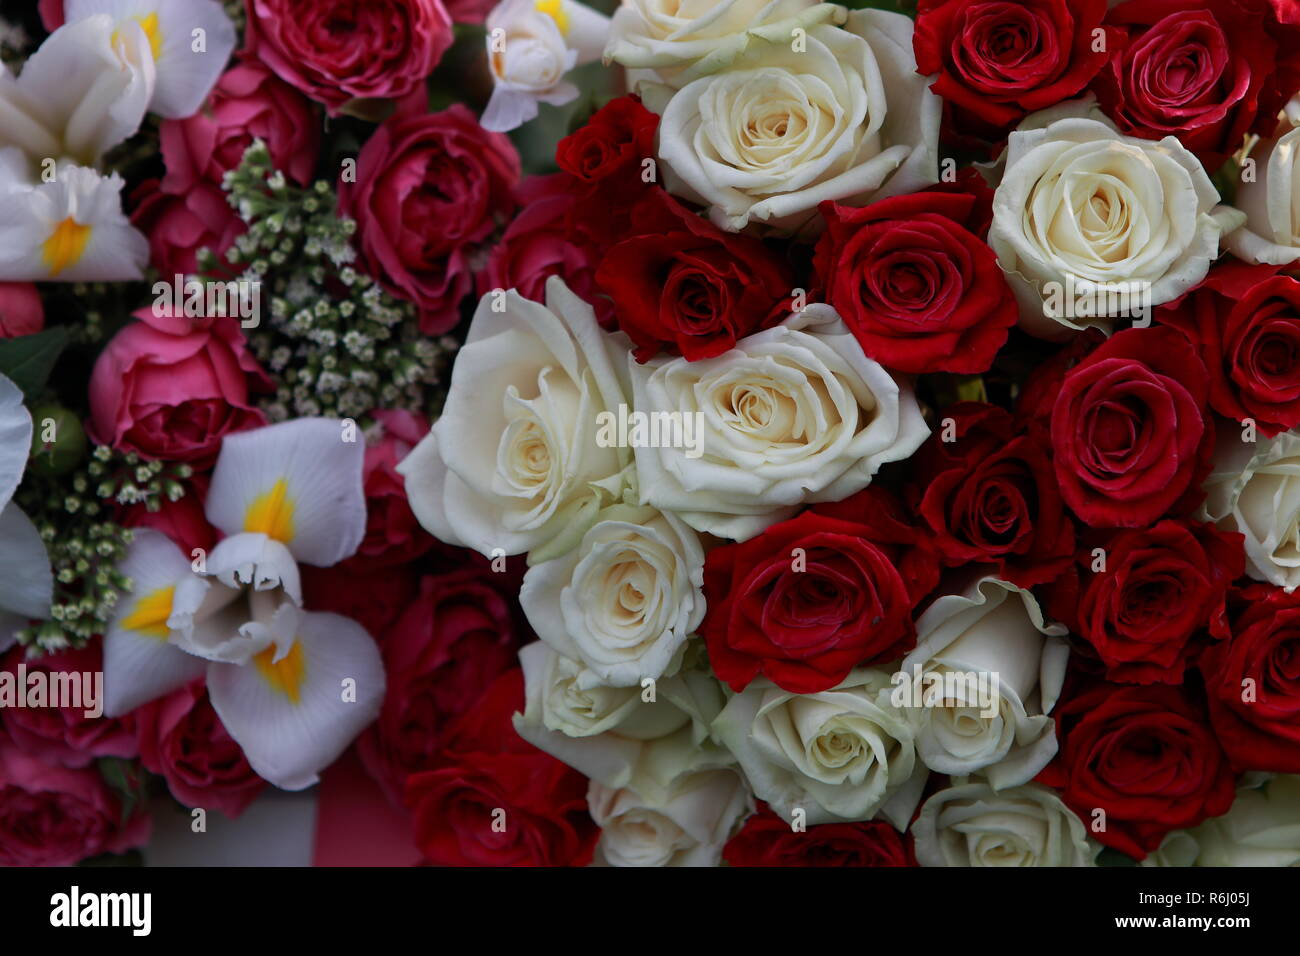 Riesige, wunderschöne Blumenstrauß aus den vielfarbigen Rosen und Blumen Stockfoto